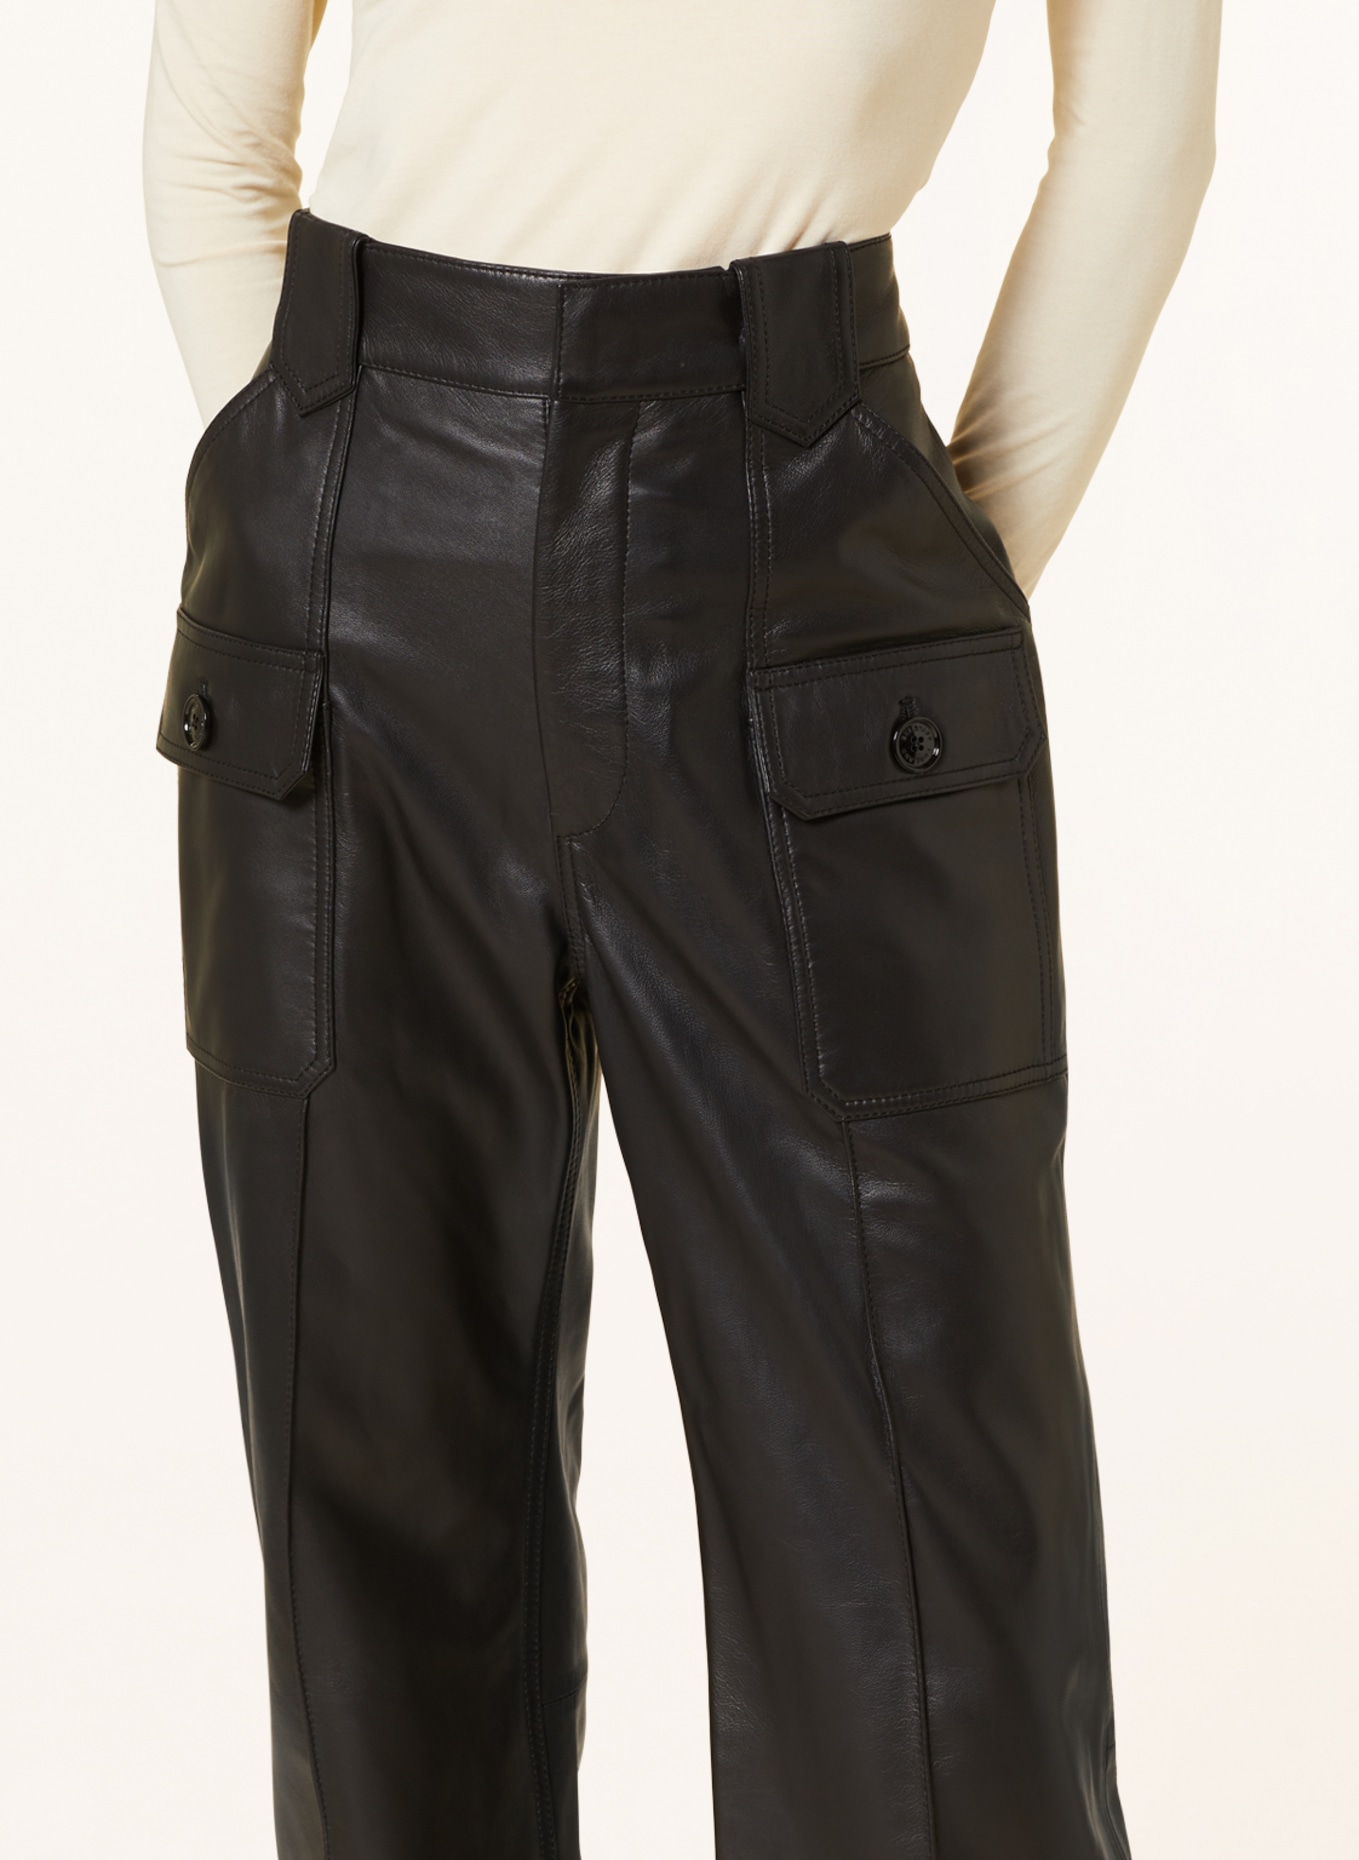 BELSTAFF Cargo pants HAZEL made of leather, Color: BLACK (Image 5)